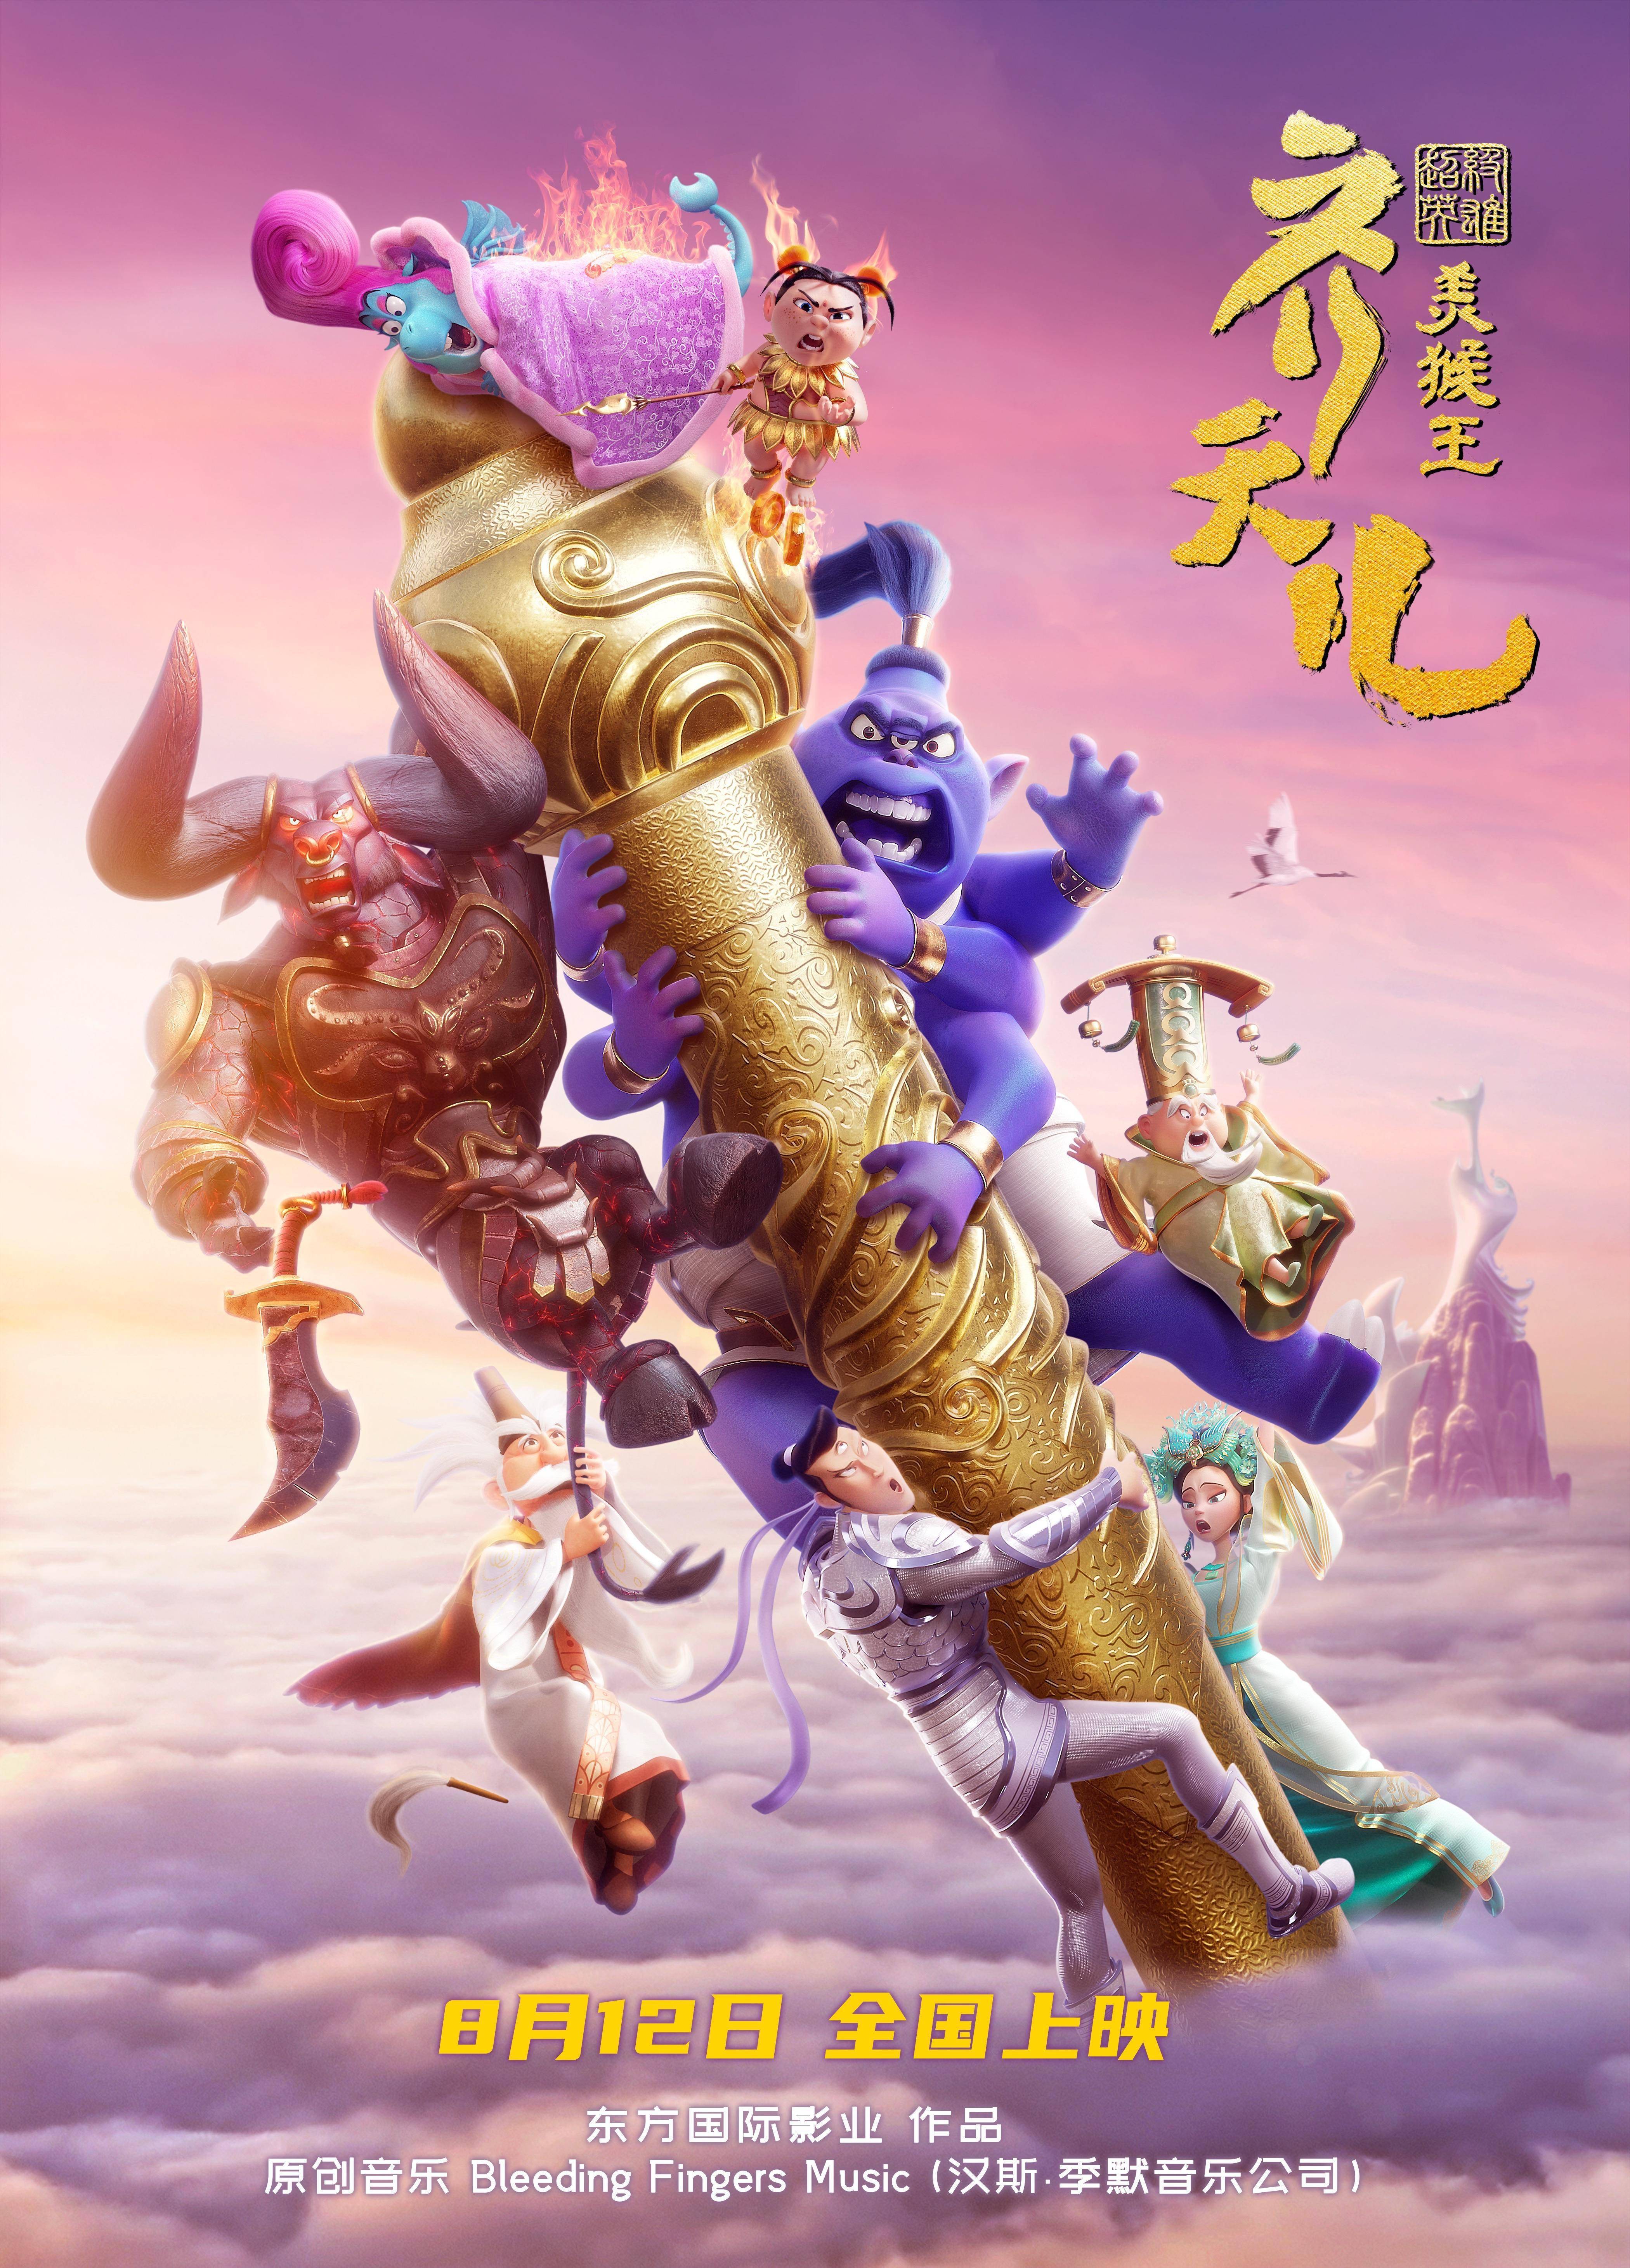 新版美猴王电影曝终极海报《超级英雄美猴王：齐天儿》将办提前观影